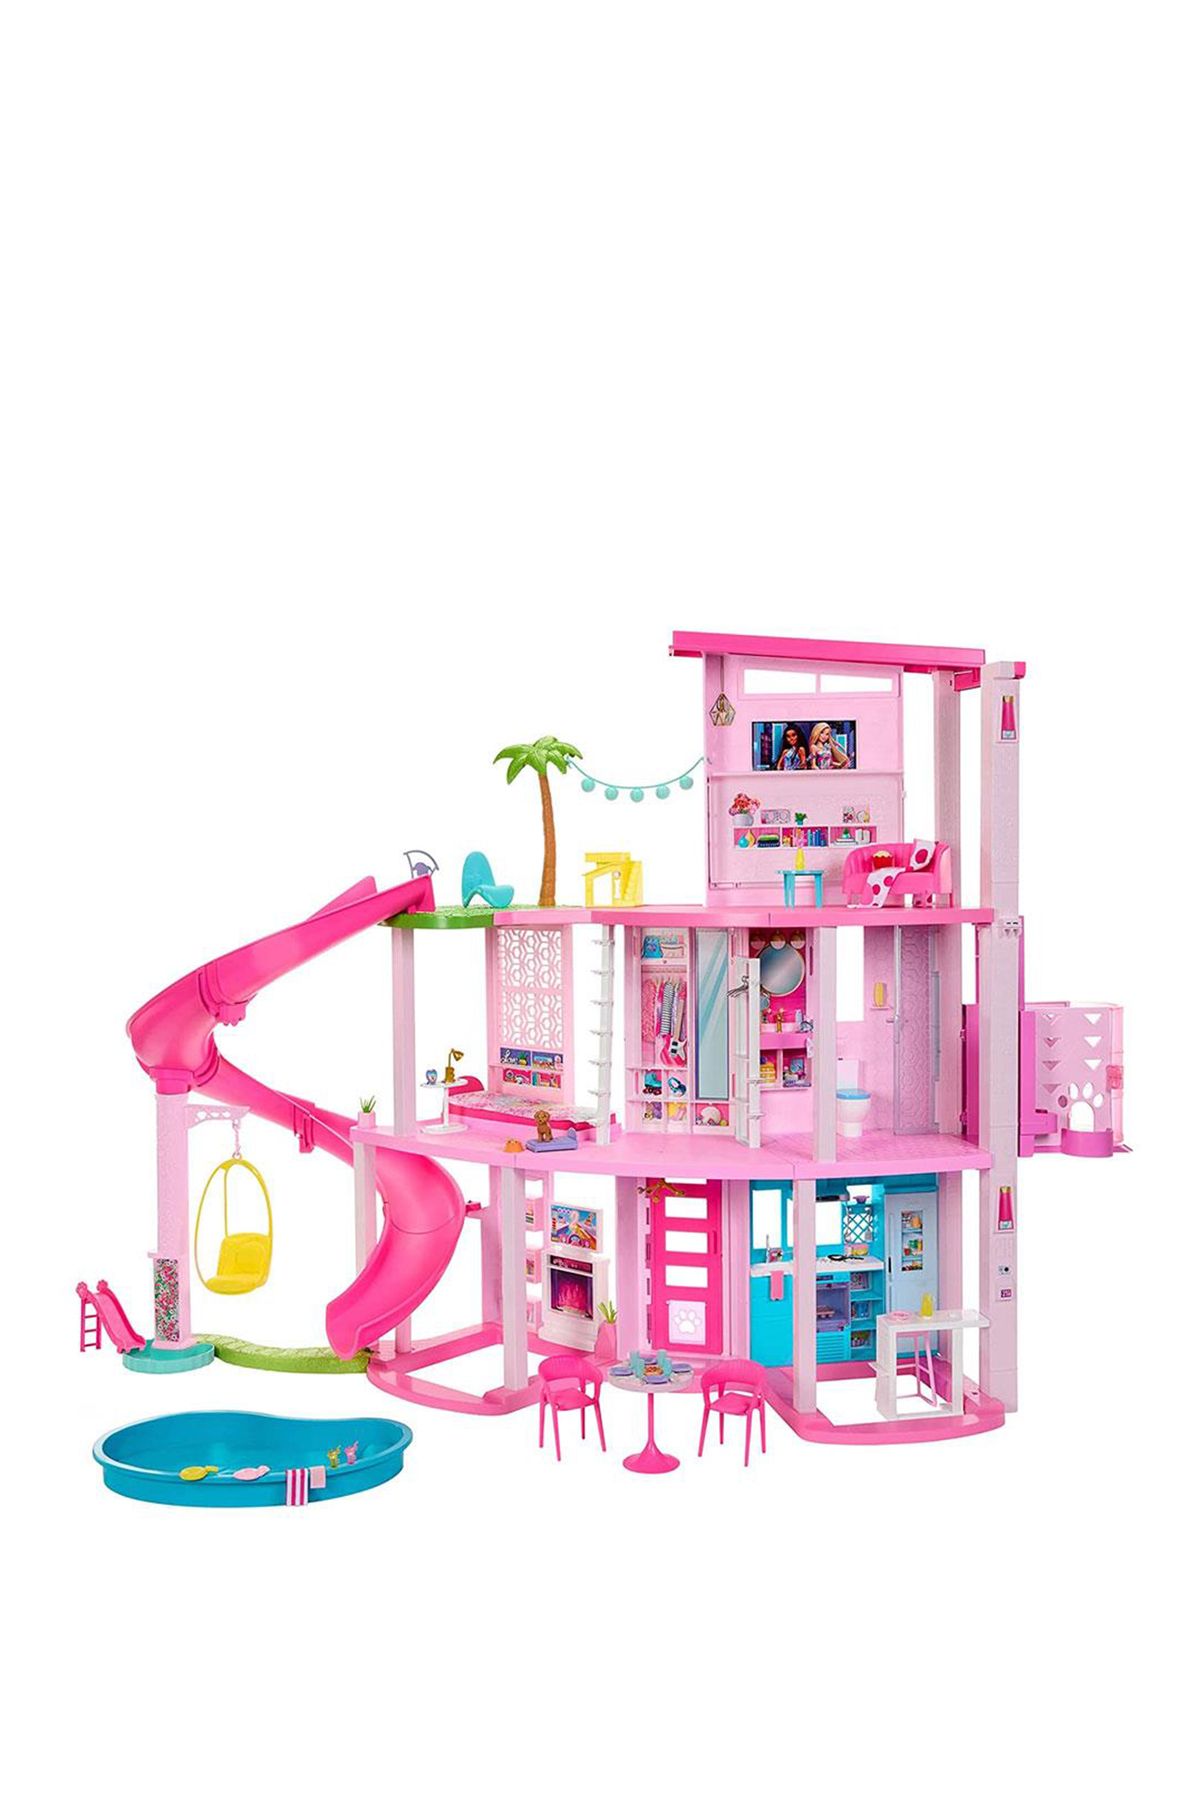 Barbie 'nin Yeni Rüya Evi Oyun Seti